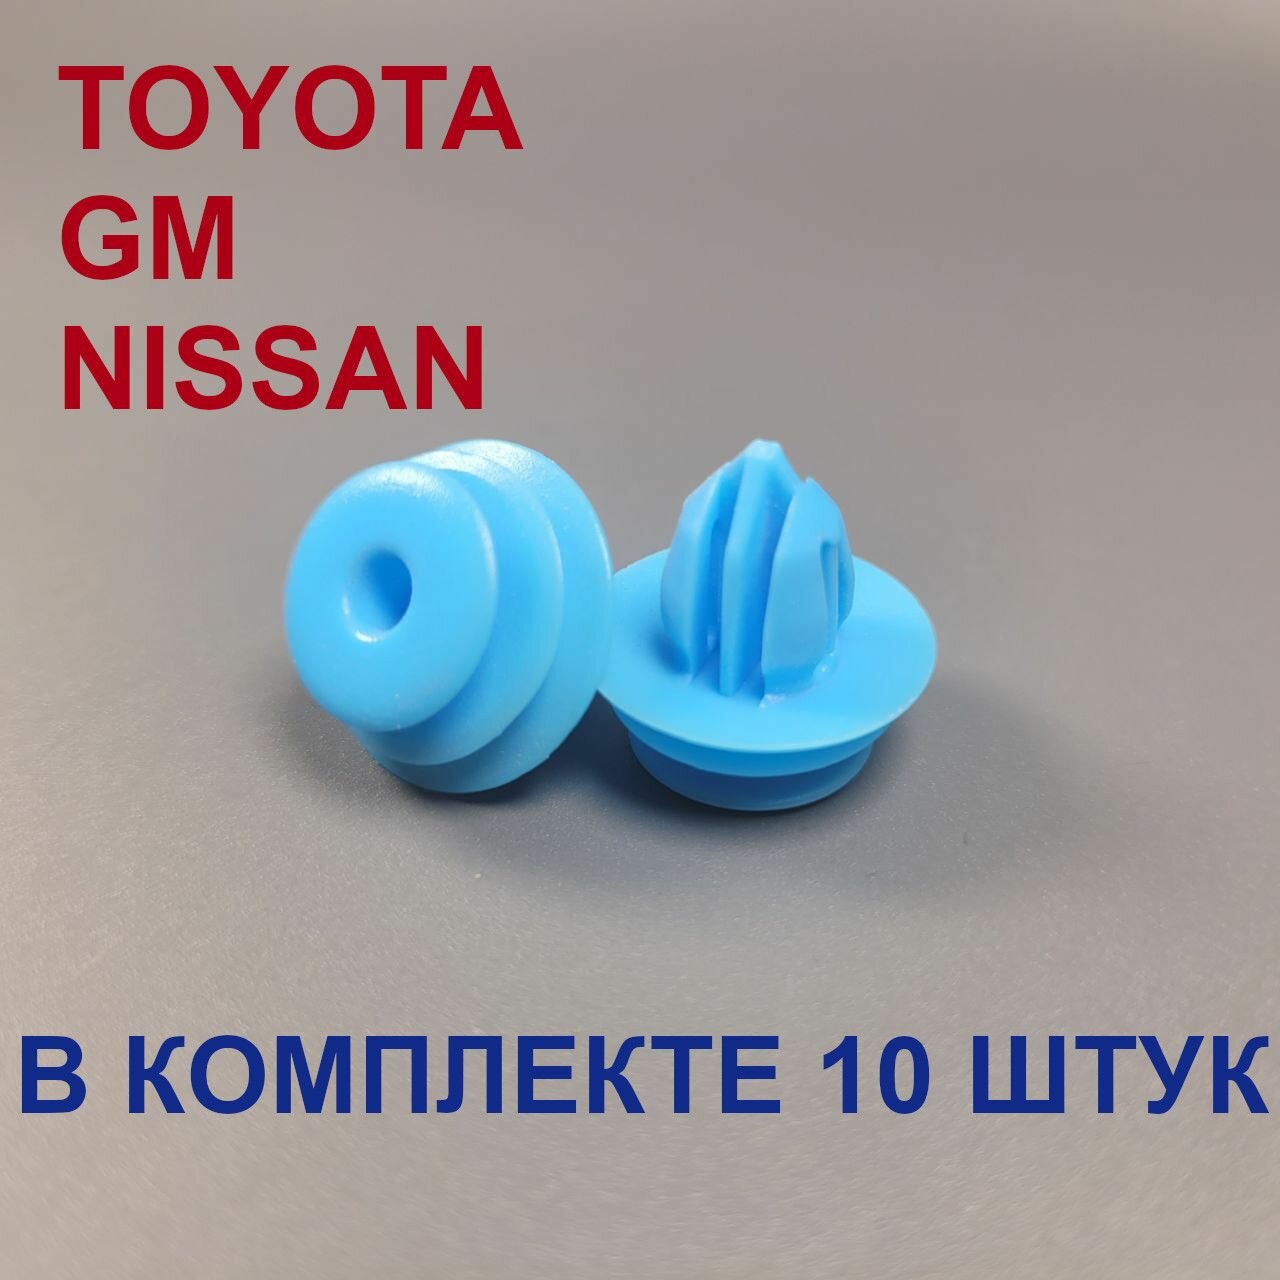 Клипсы автомобильные для Тойота Ниссан GM